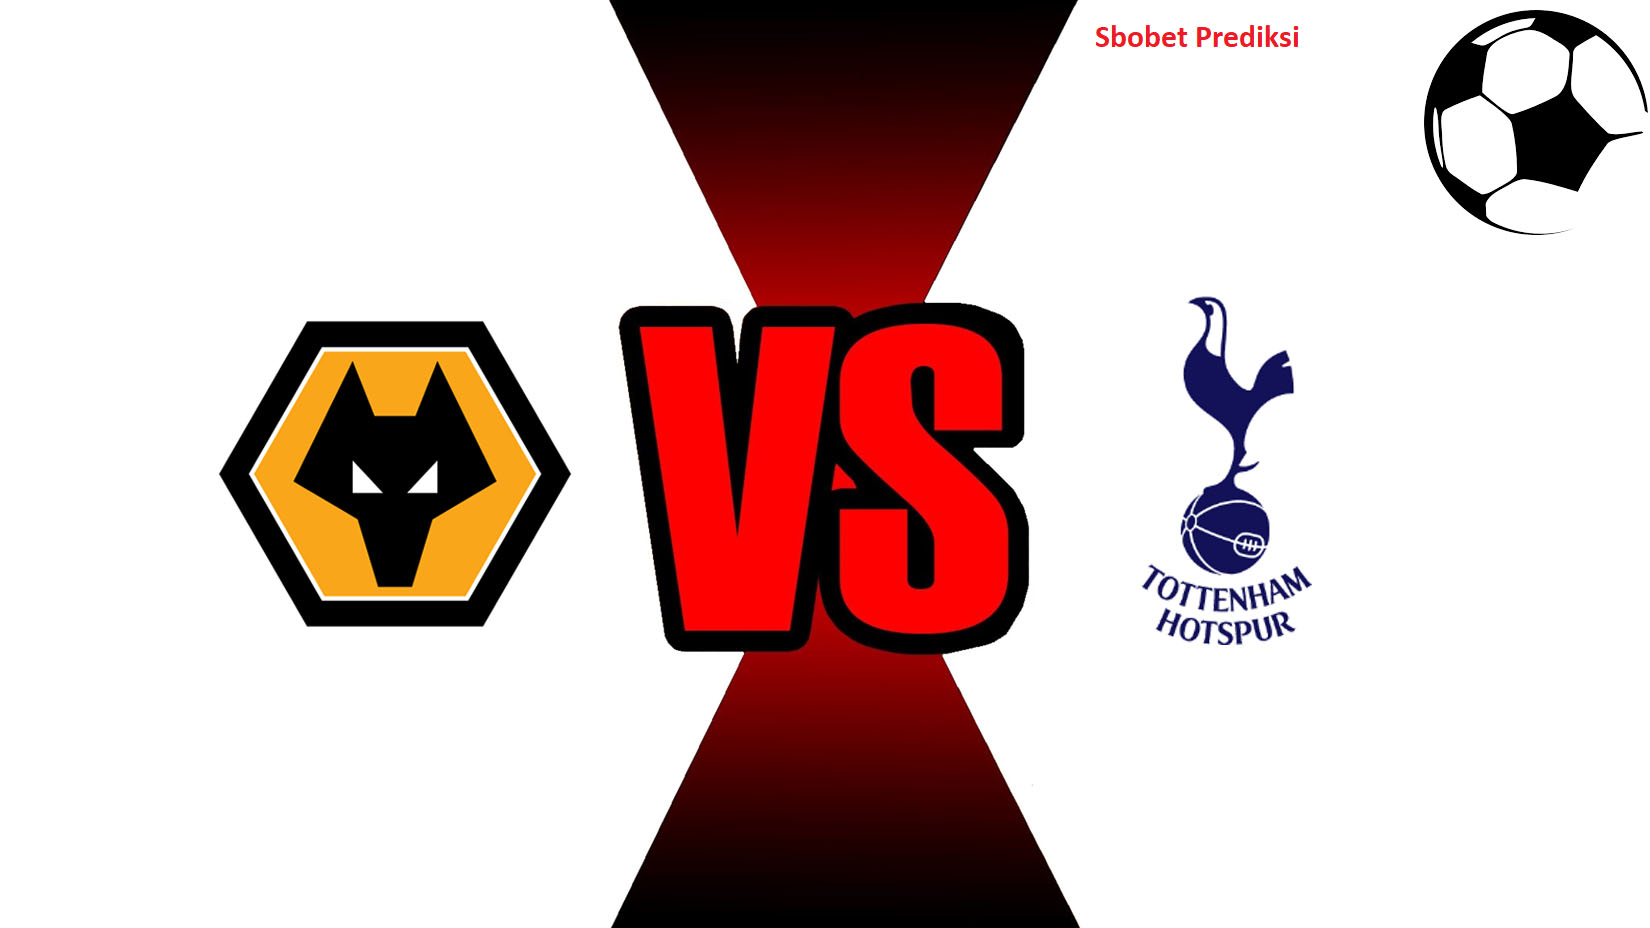 Prediksi Skor Bola Online Wolverhampton vs Tottenham Hotspur 4 November 2018